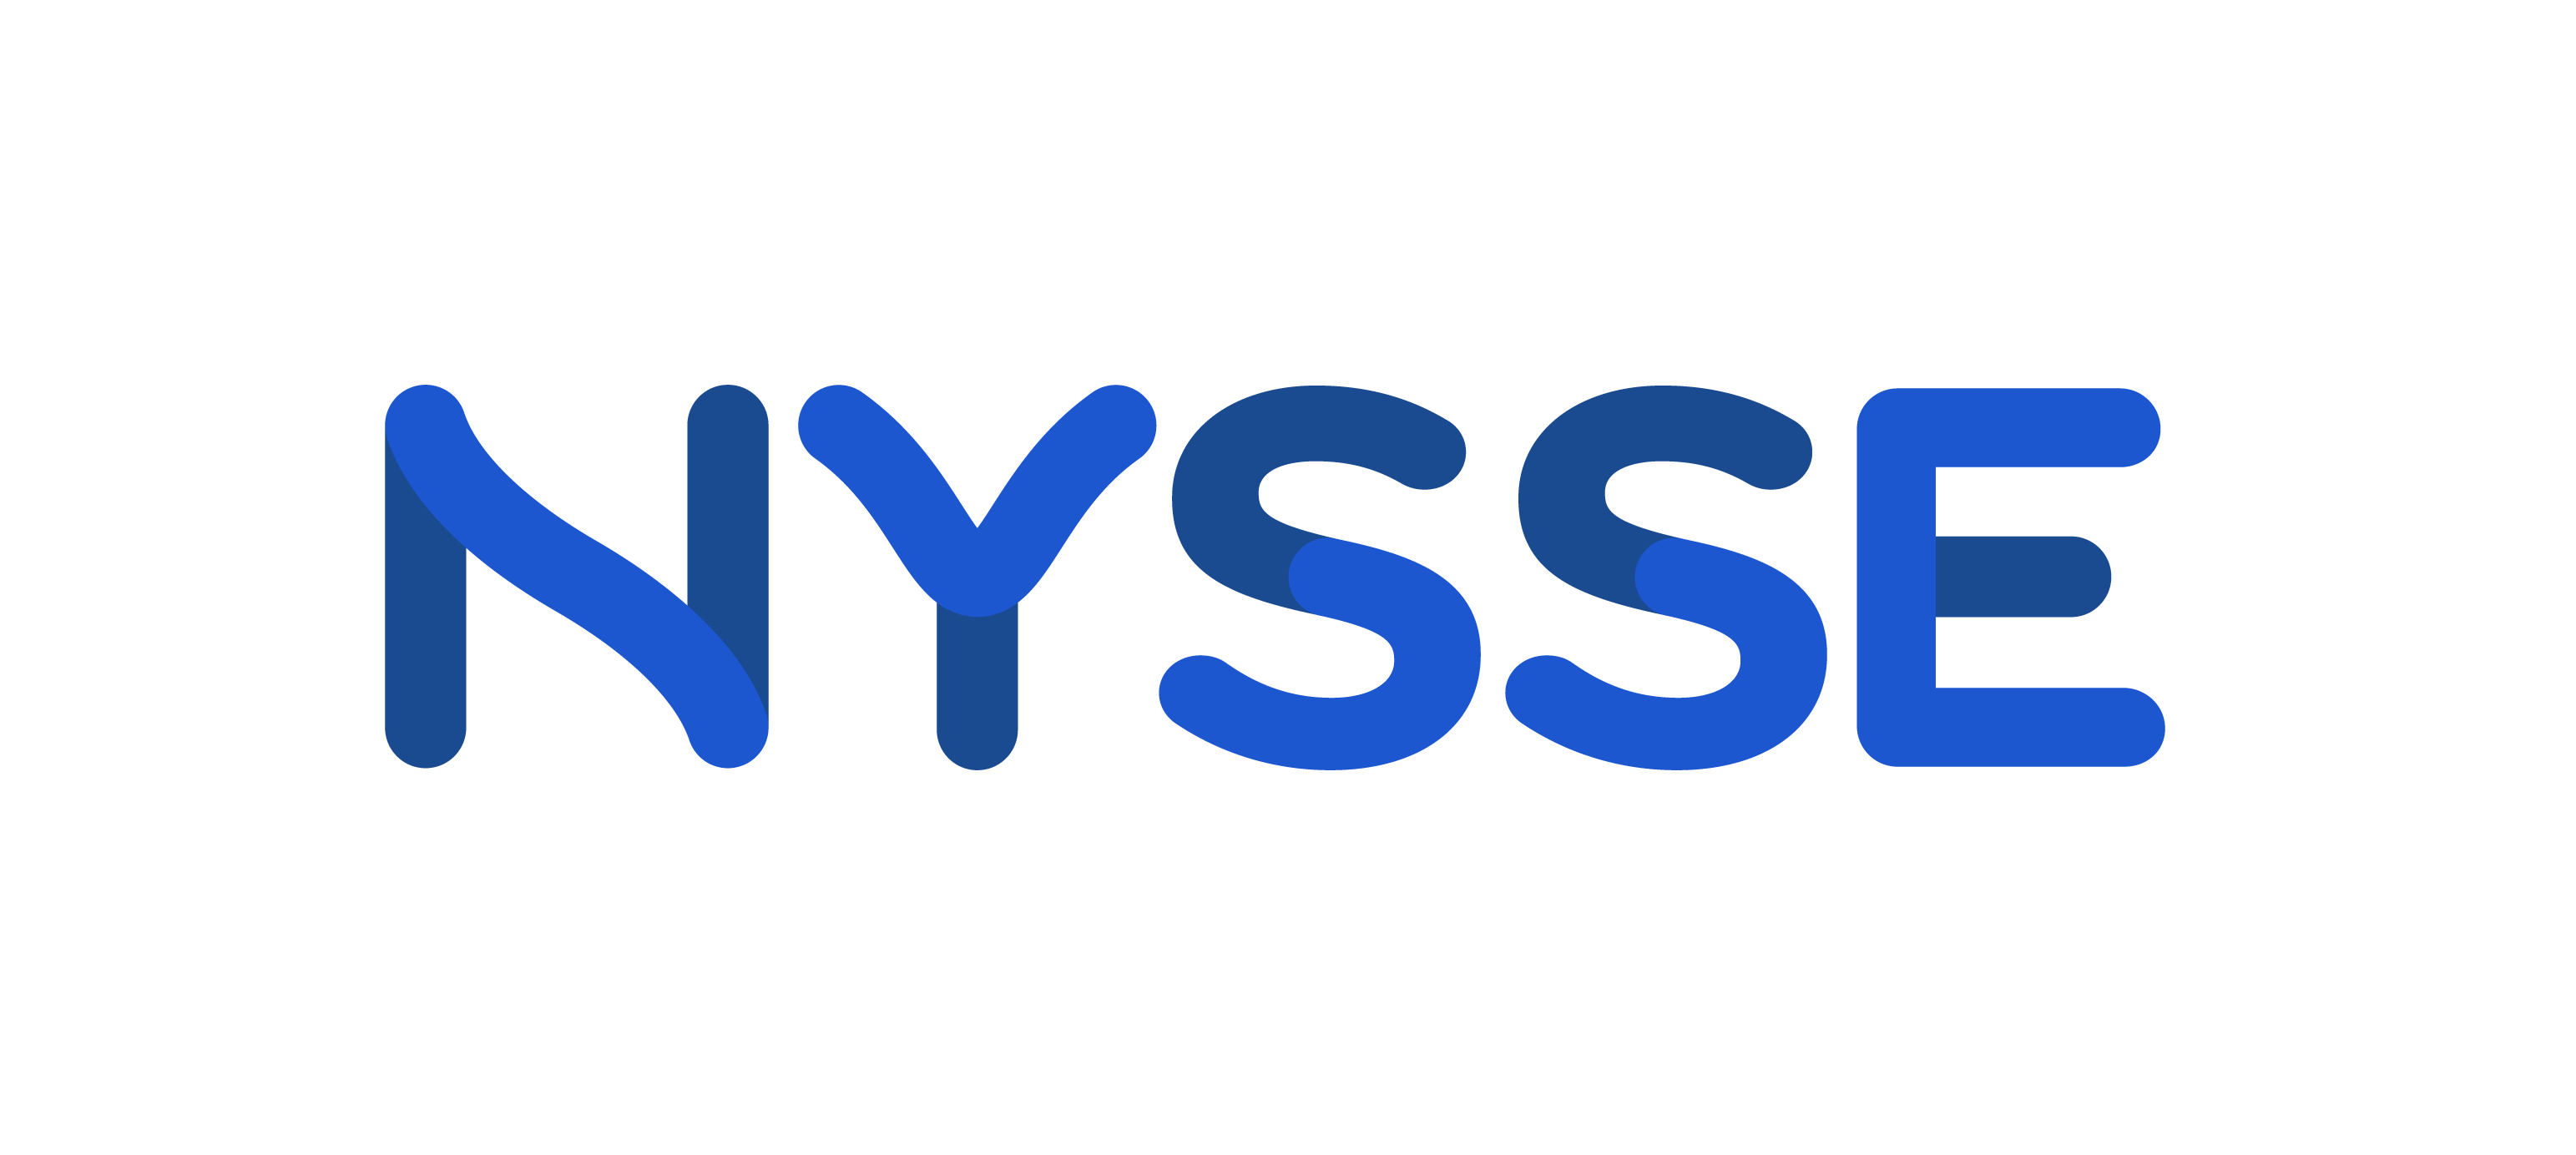 Nyssen logo.